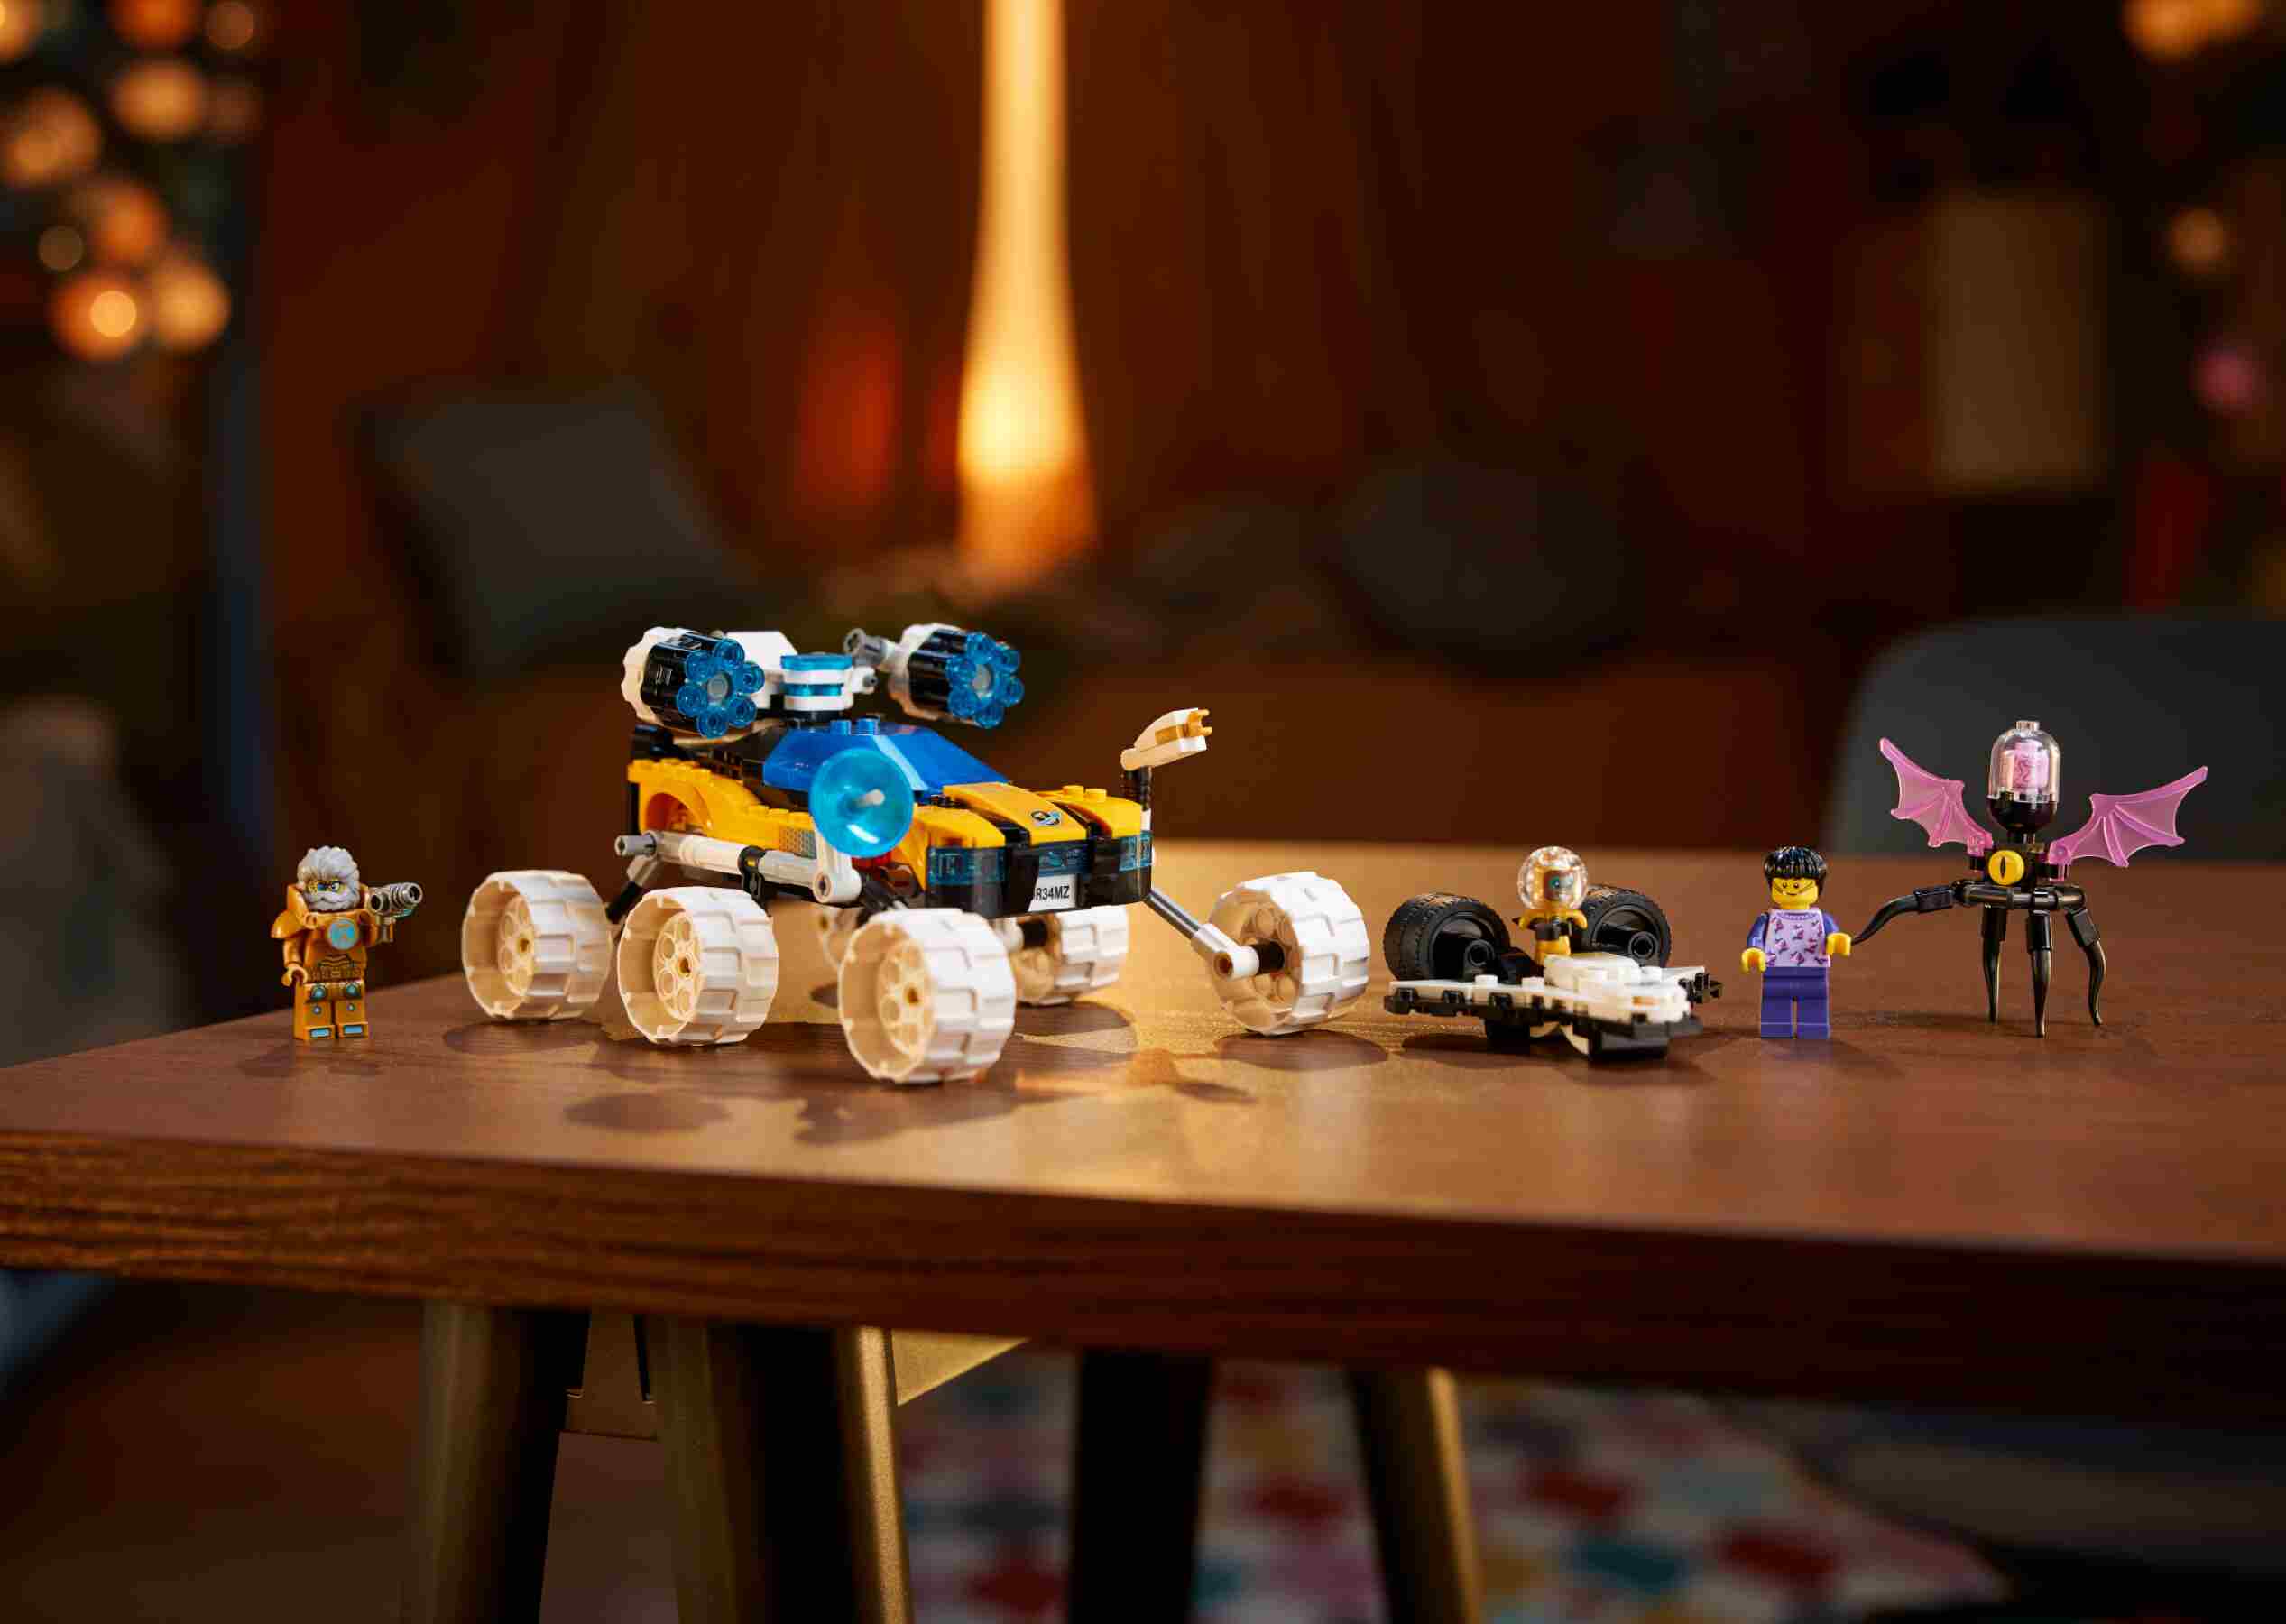 LEGO 71475 DREAMZzz Der Weltraumbuggy von Mr. Oz, 2 Bauoptionen, 2 Minifiguren